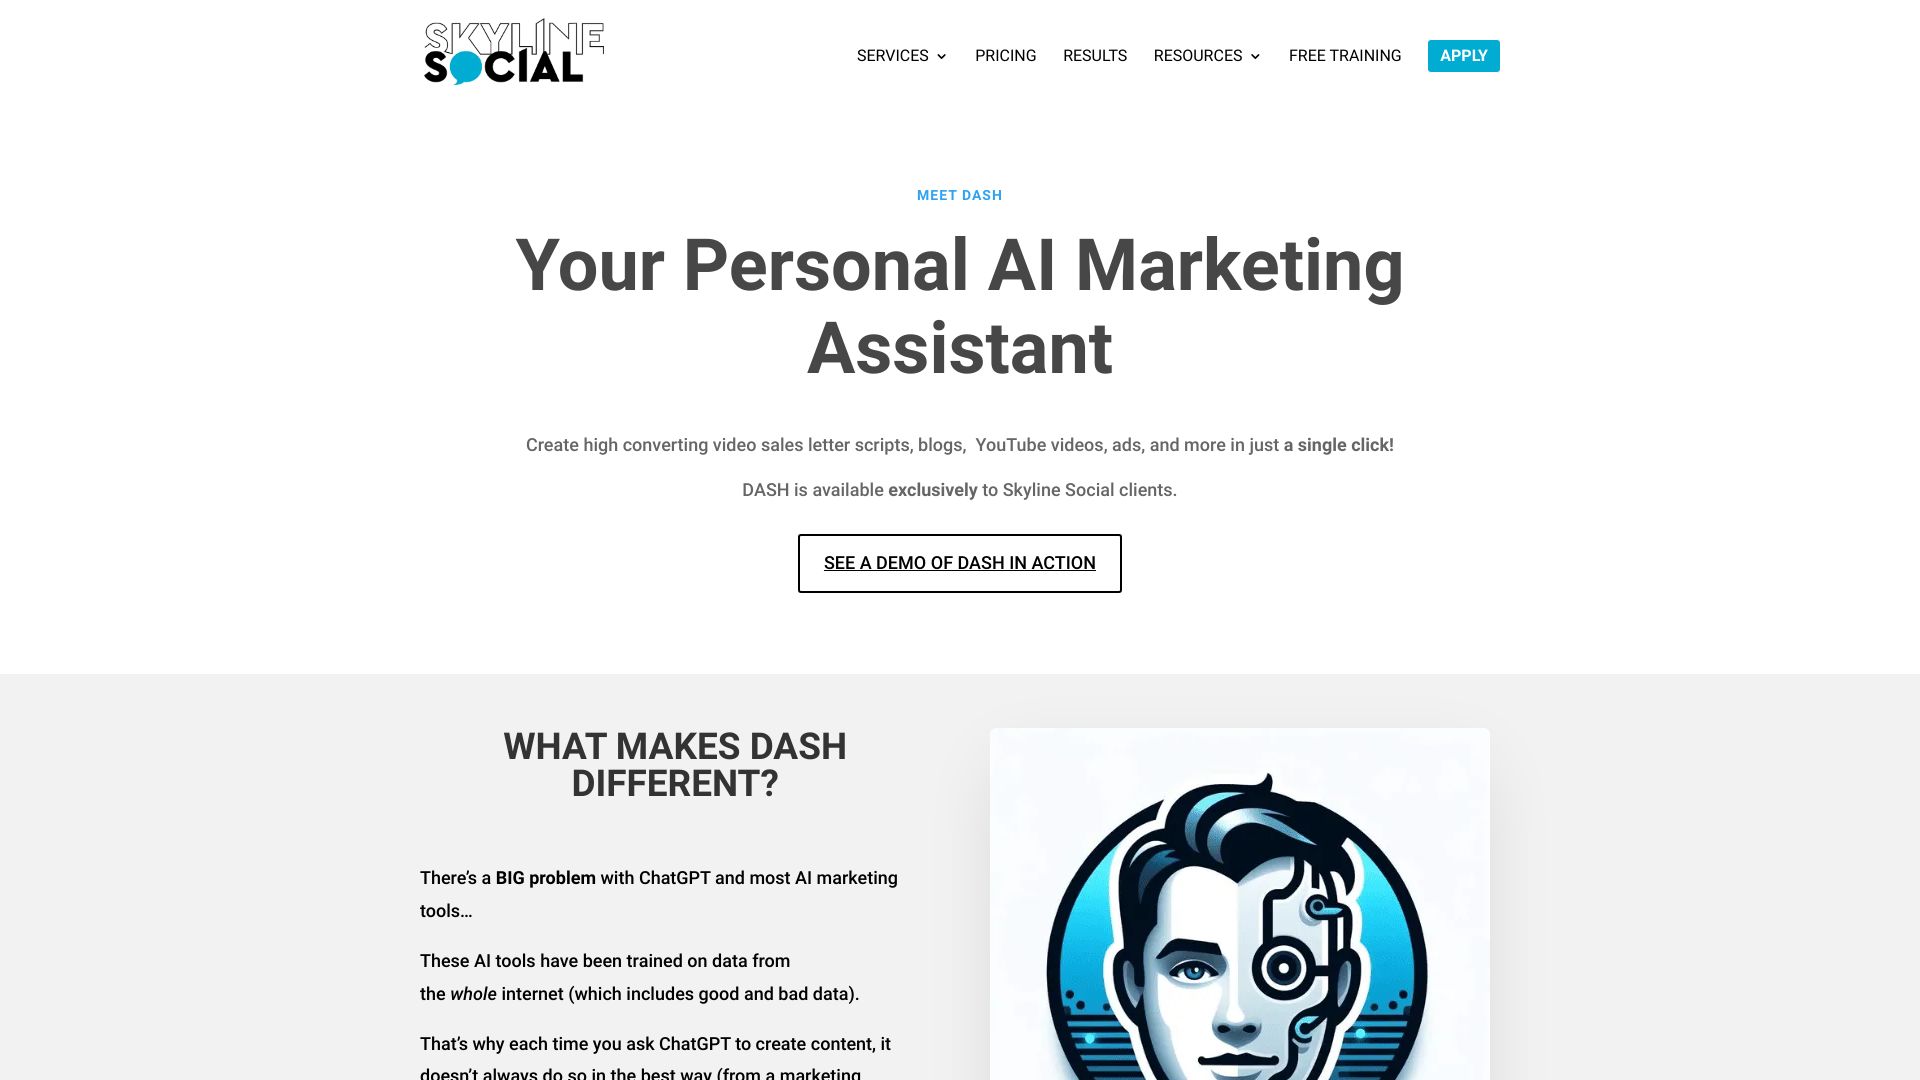 Assistant marketing IA de Skyline Social